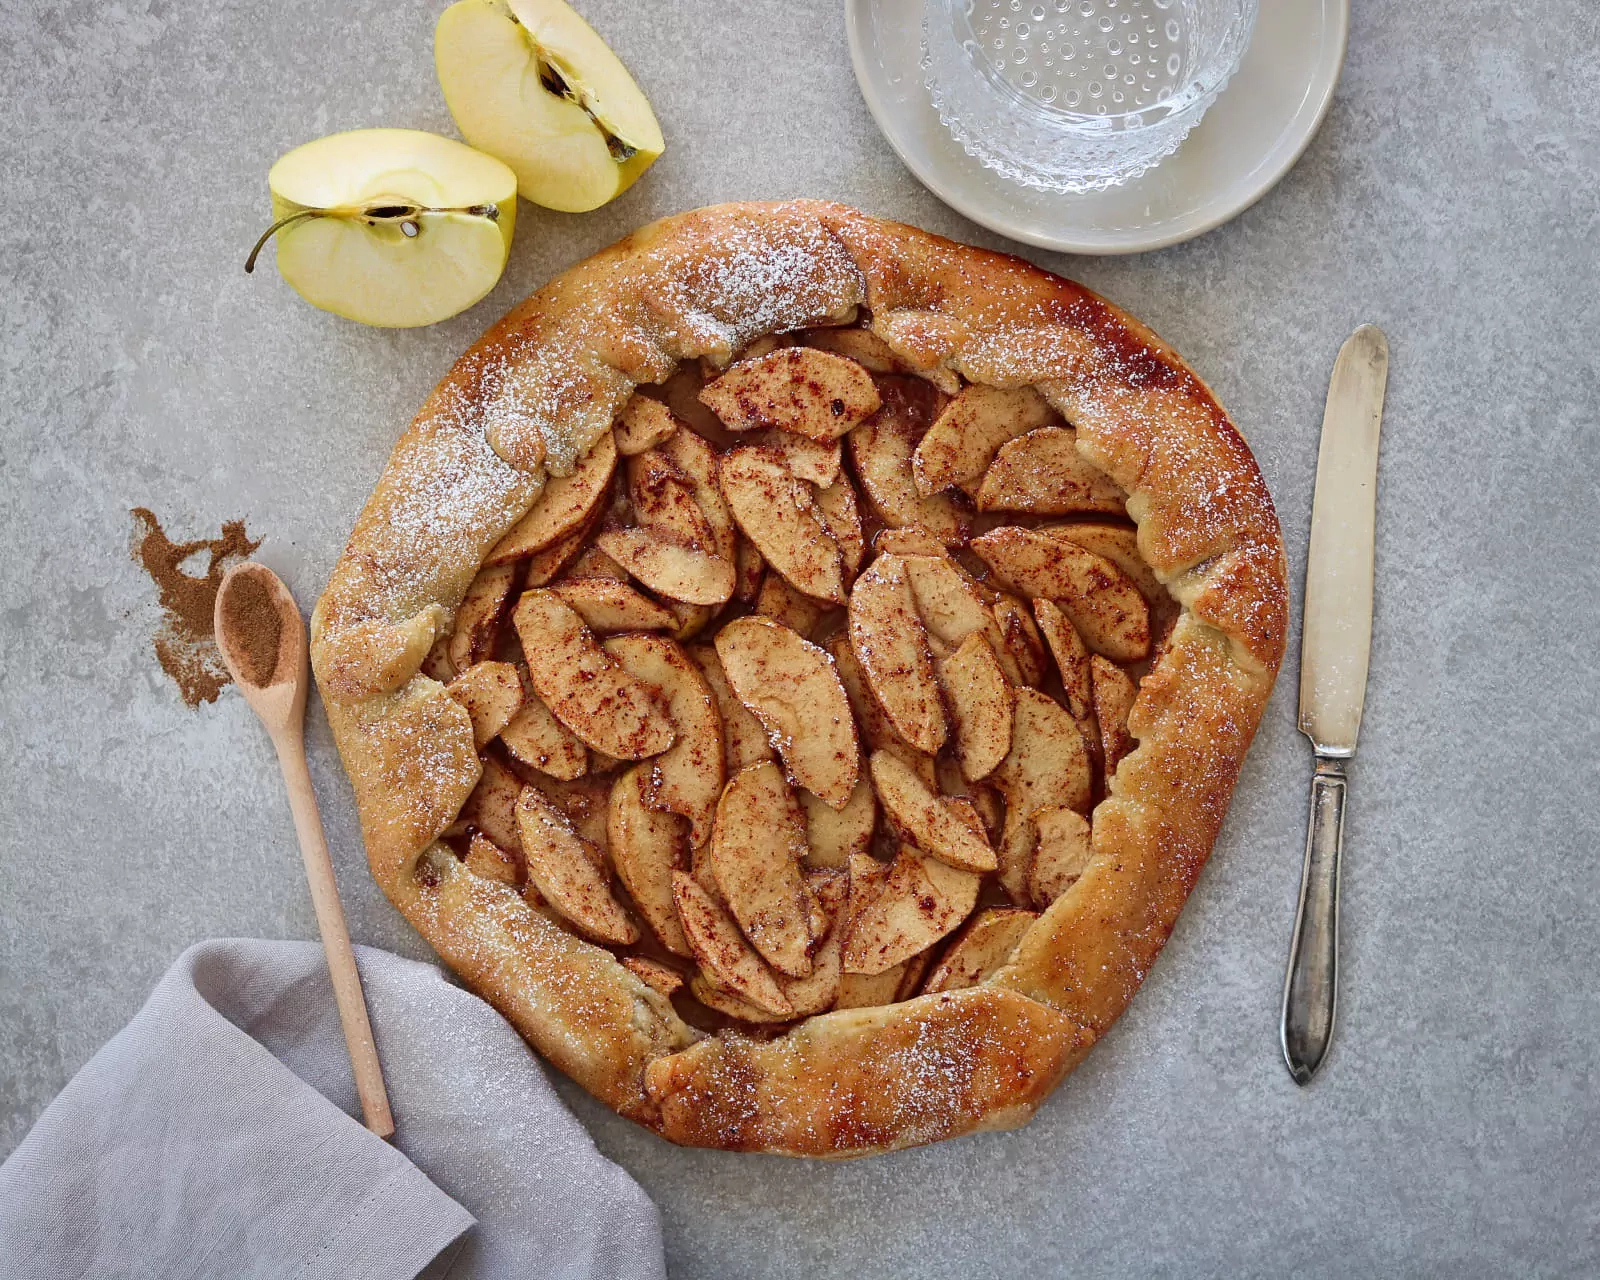 Яблочный пирог - галет (Apple galette)